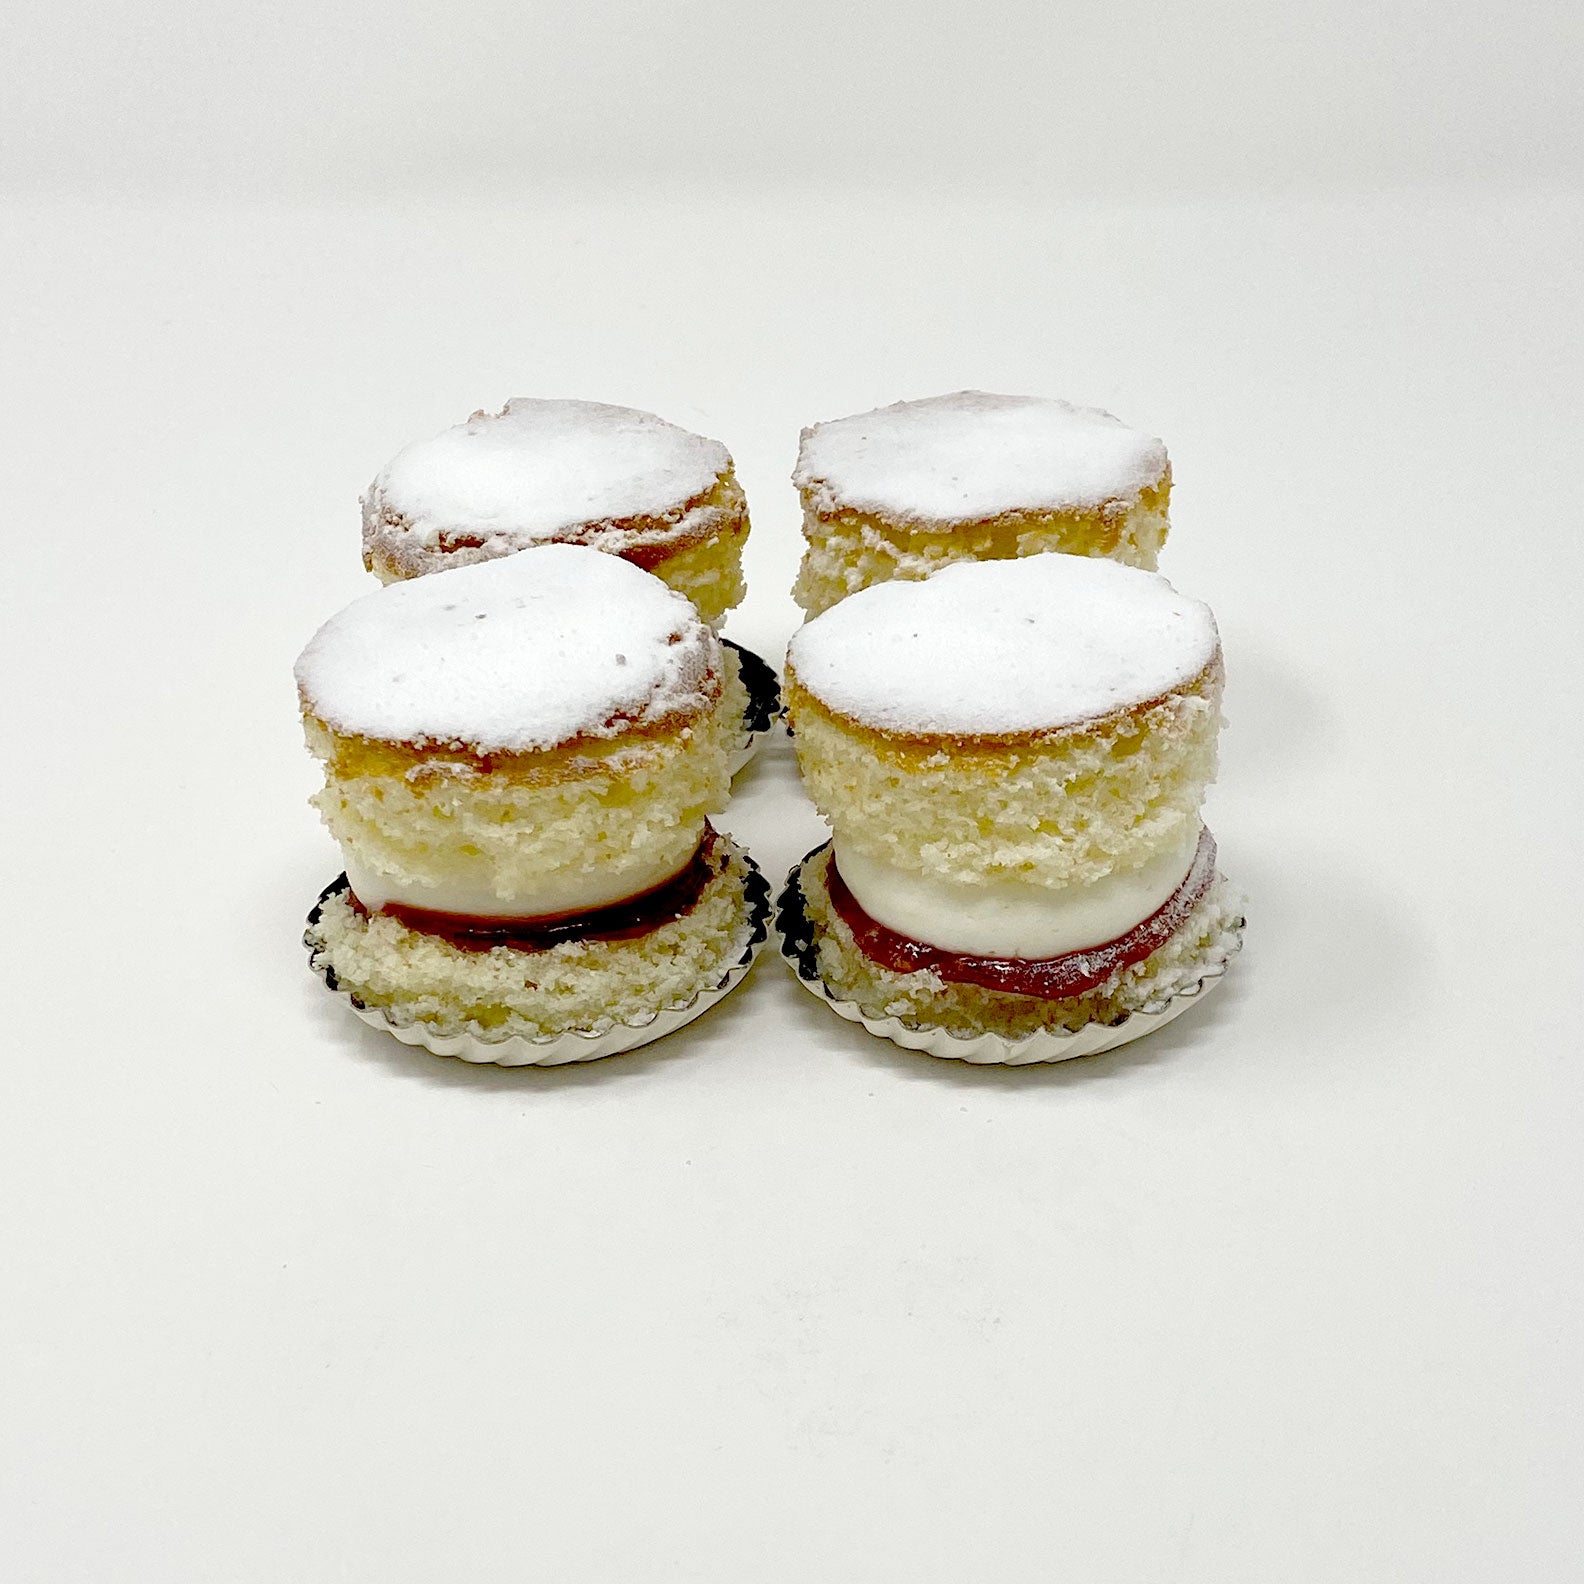 Mini Victoria Sponge Cakes (A Taste of Britain) - The Daring Gourmet